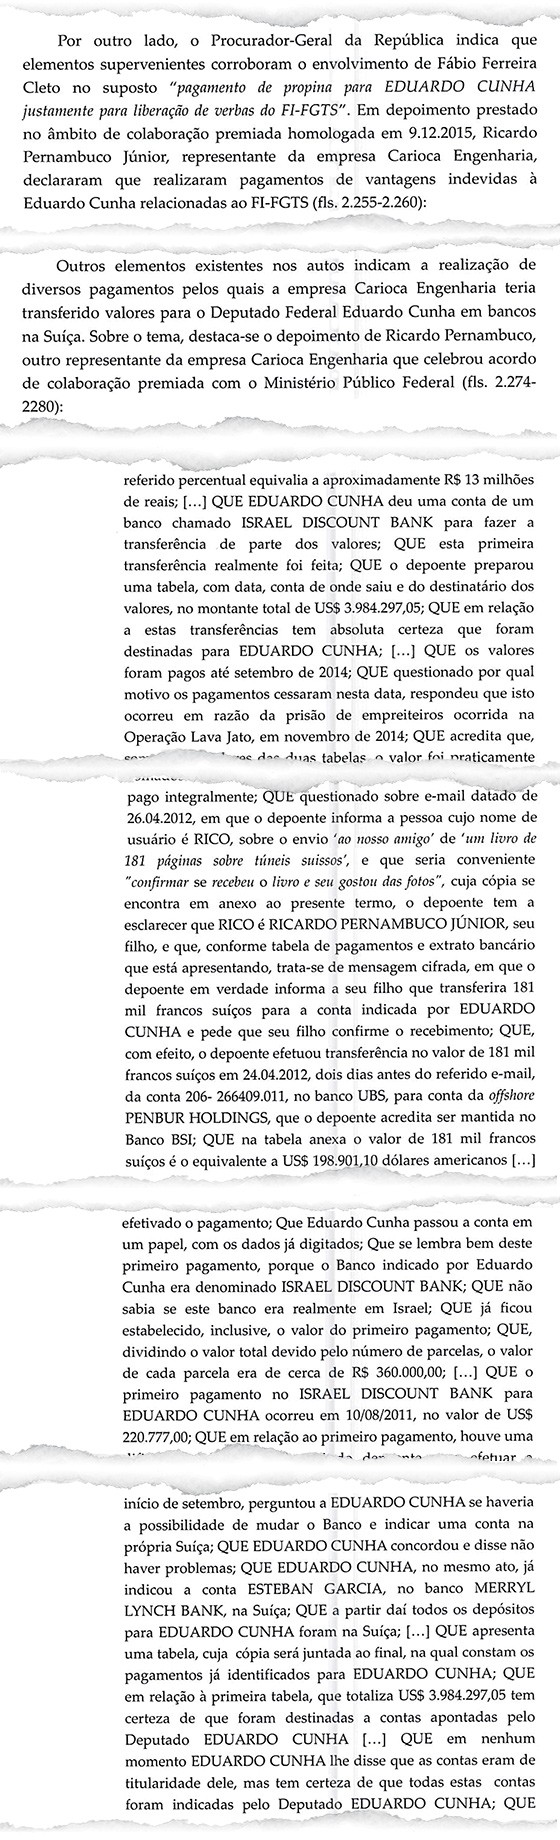 Documento obtido por ÉPOCA revela que novos delatores montaram uma rede de contas na Suíça e em Israel para pagar propina a Eduardo Cunha (Foto: Reprodução)